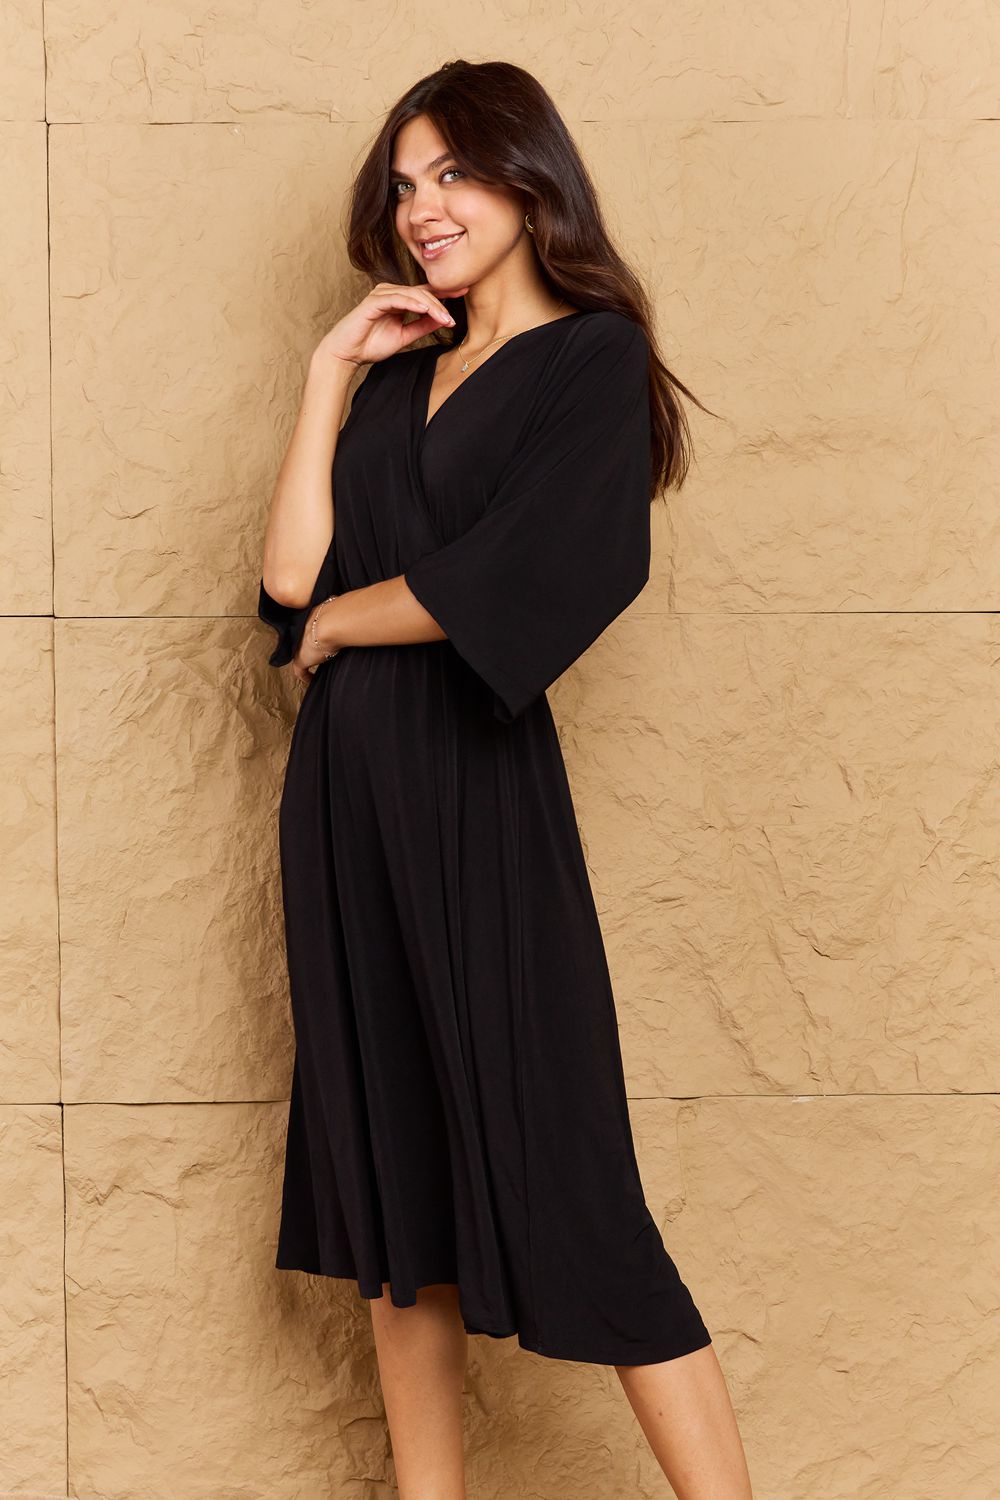 Kimono Sleeve Dress in Black